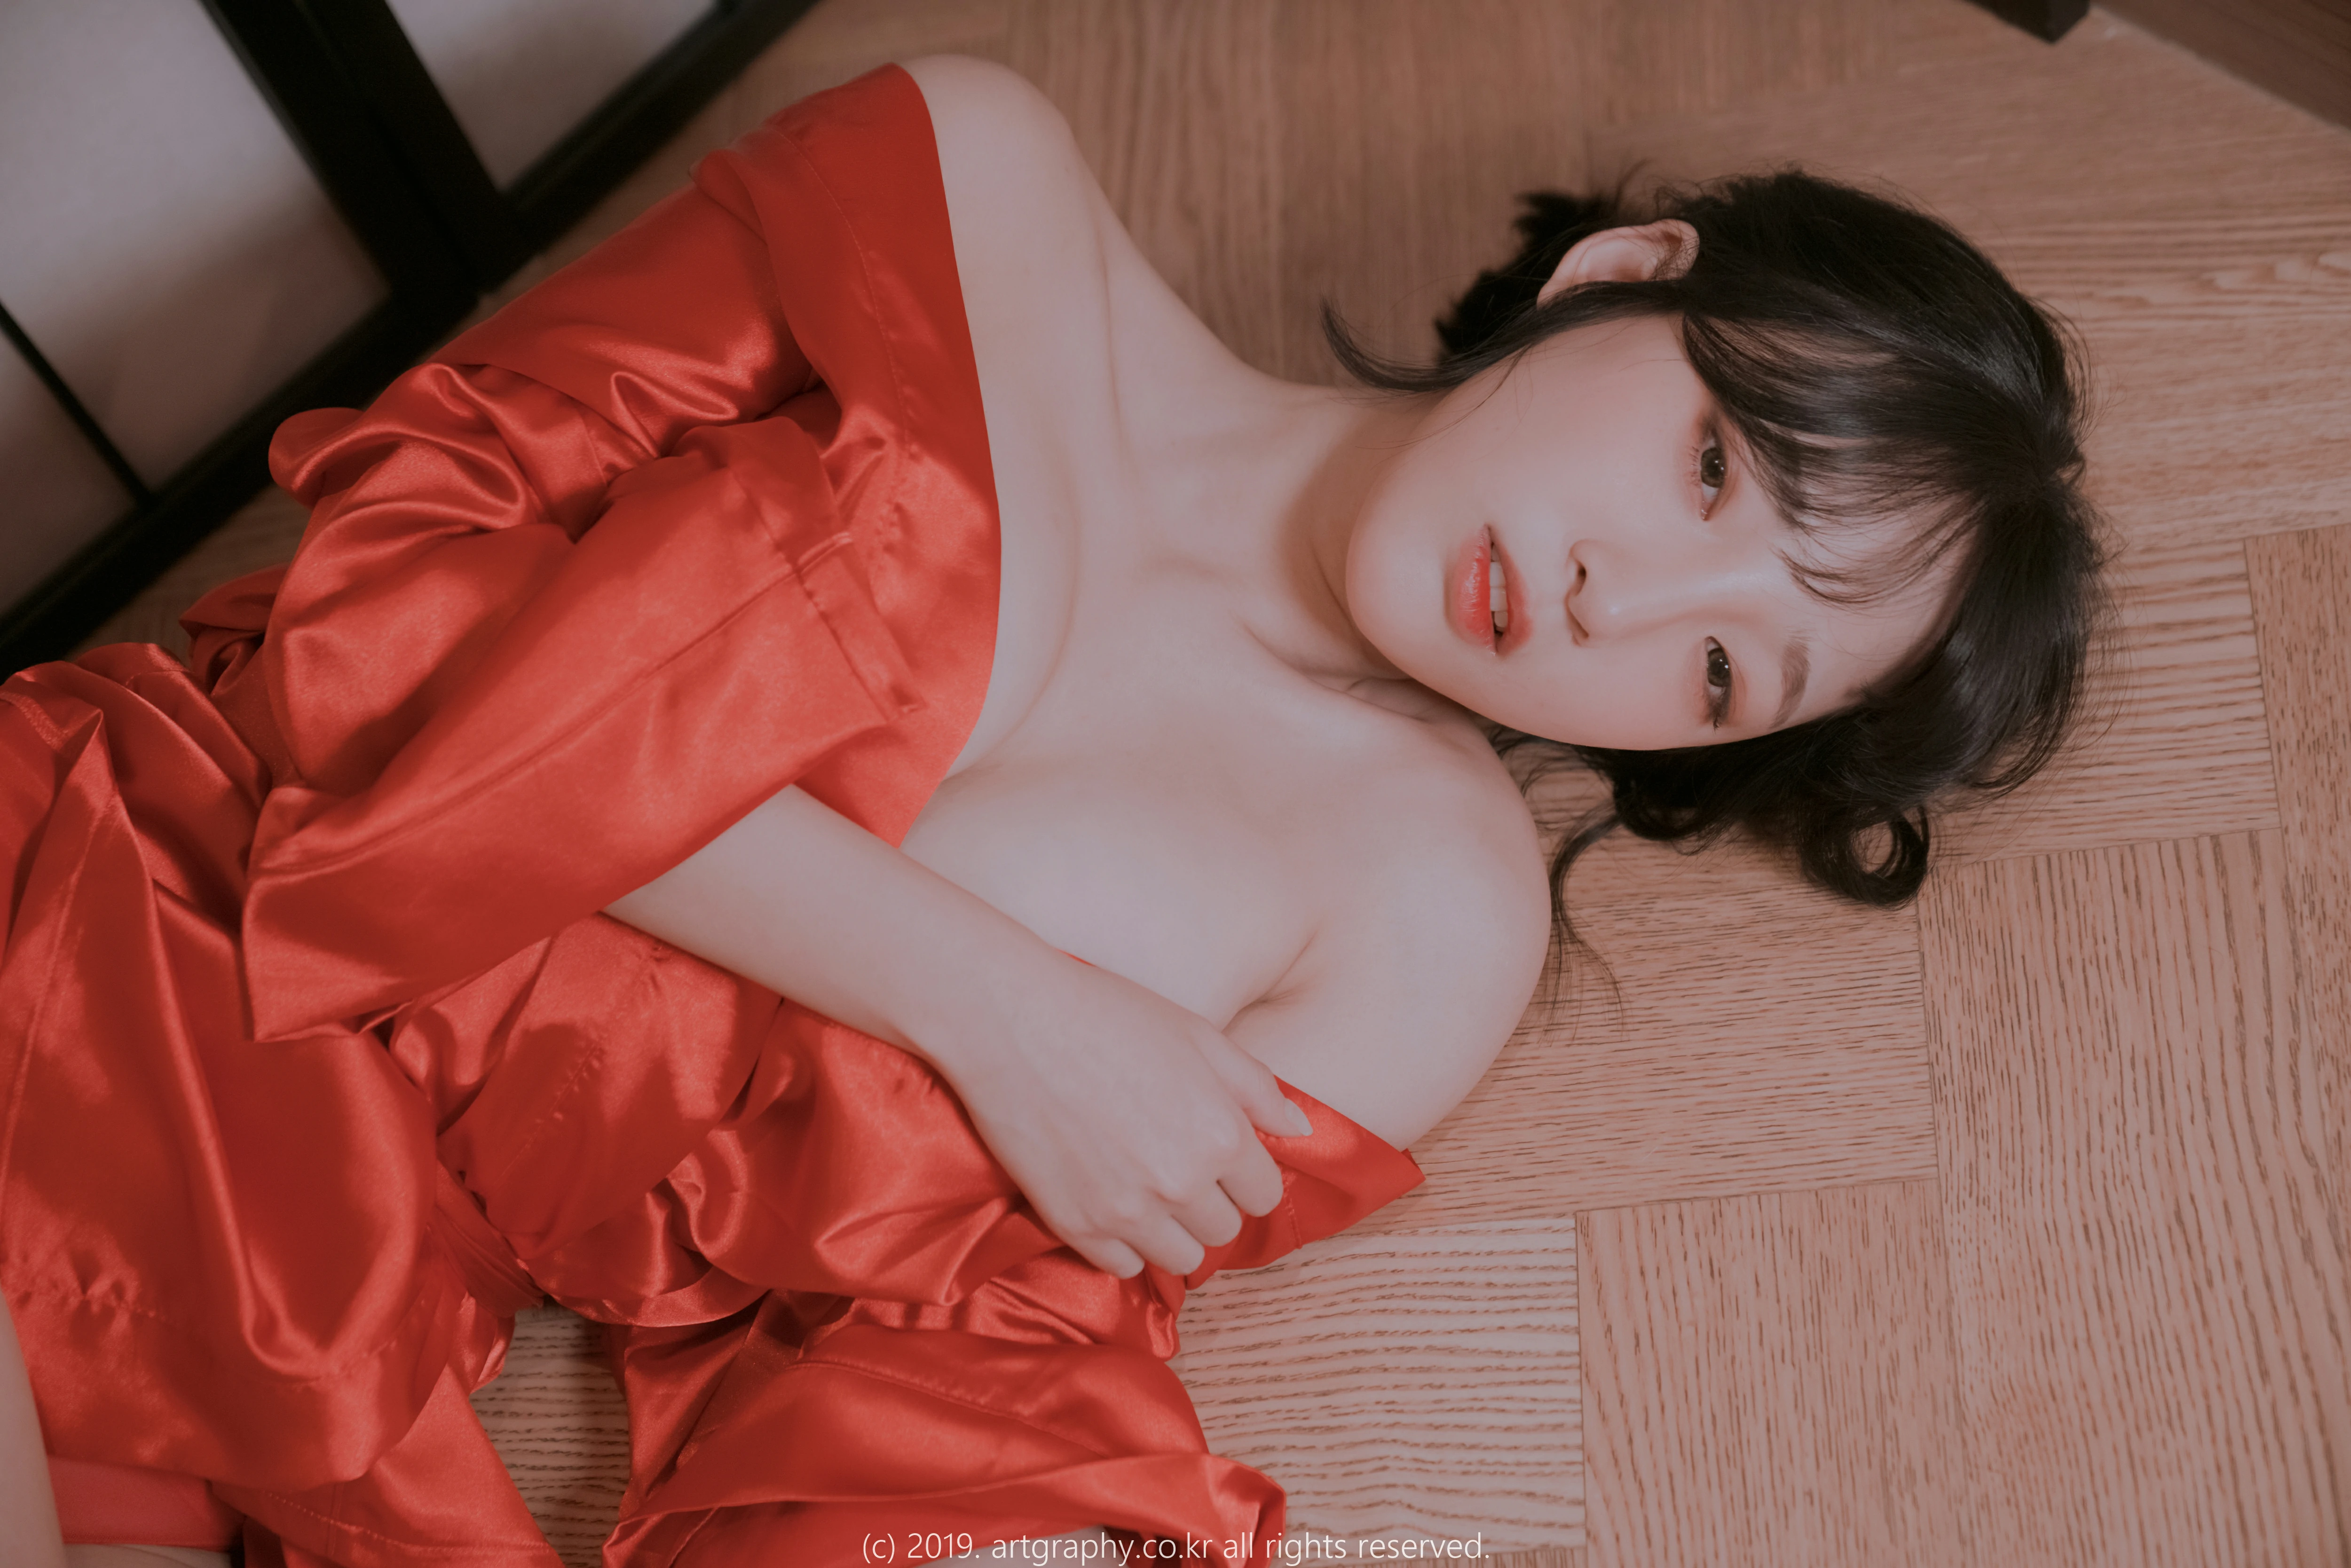 巨乳少女 模特_卿卿 白色透视情趣睡衣与红色和服性感私房写真集,